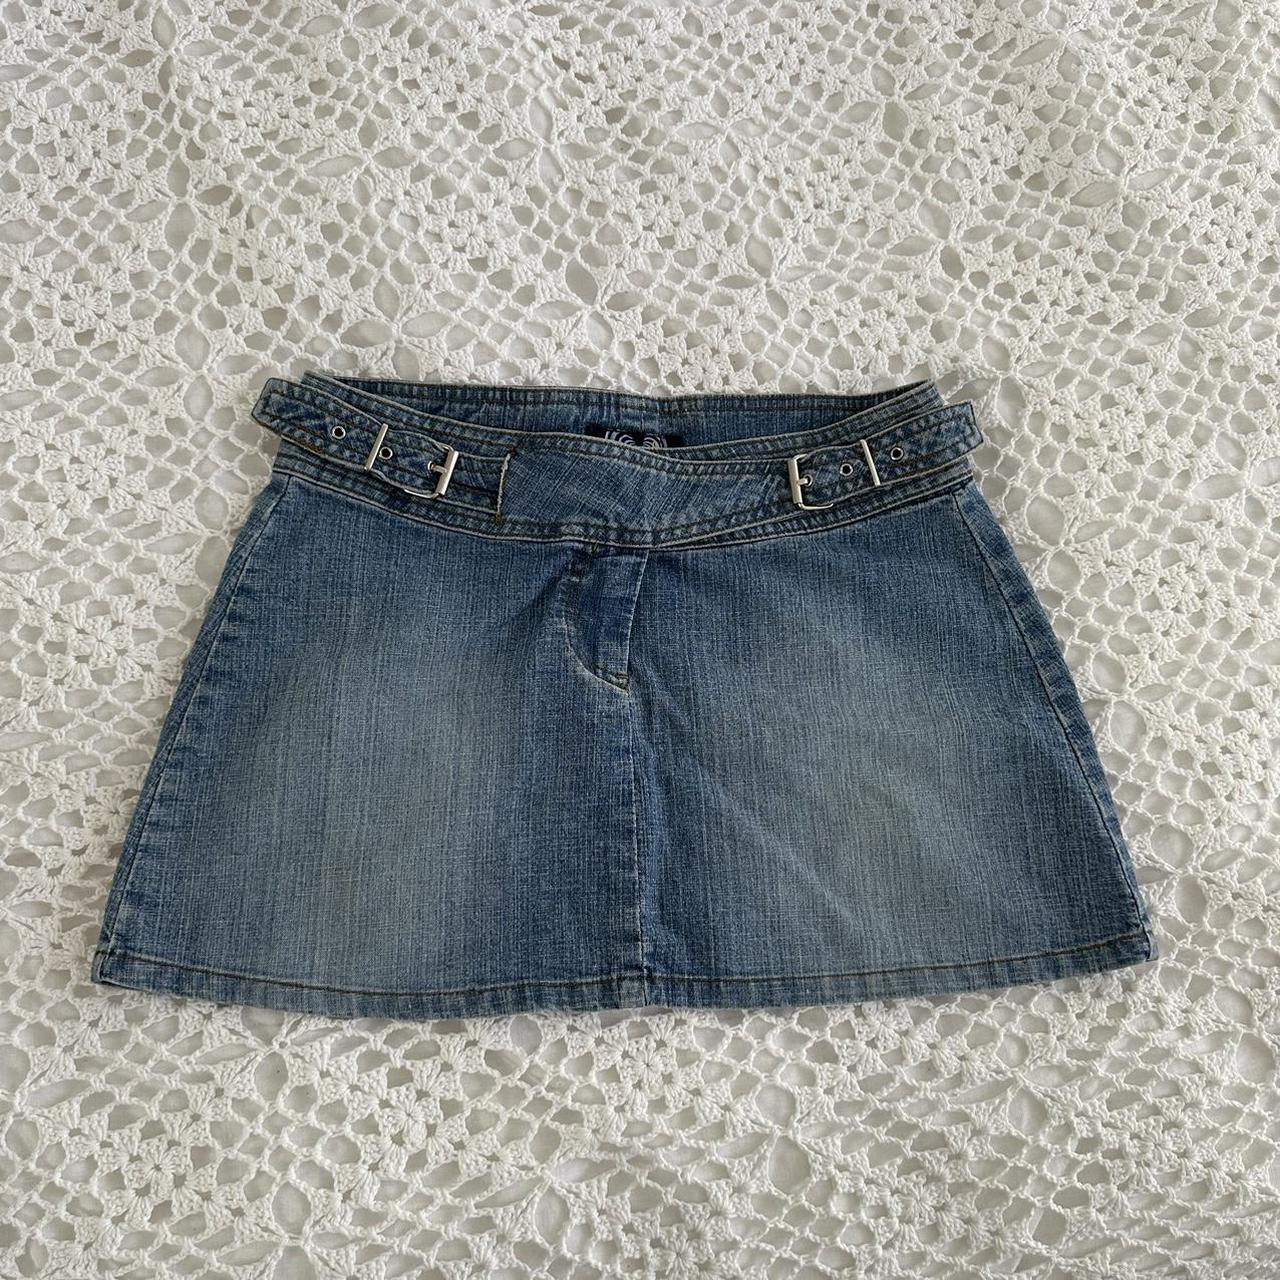 Vintage 90s y2k denim mini skirt 🪽 The cutest... - Depop